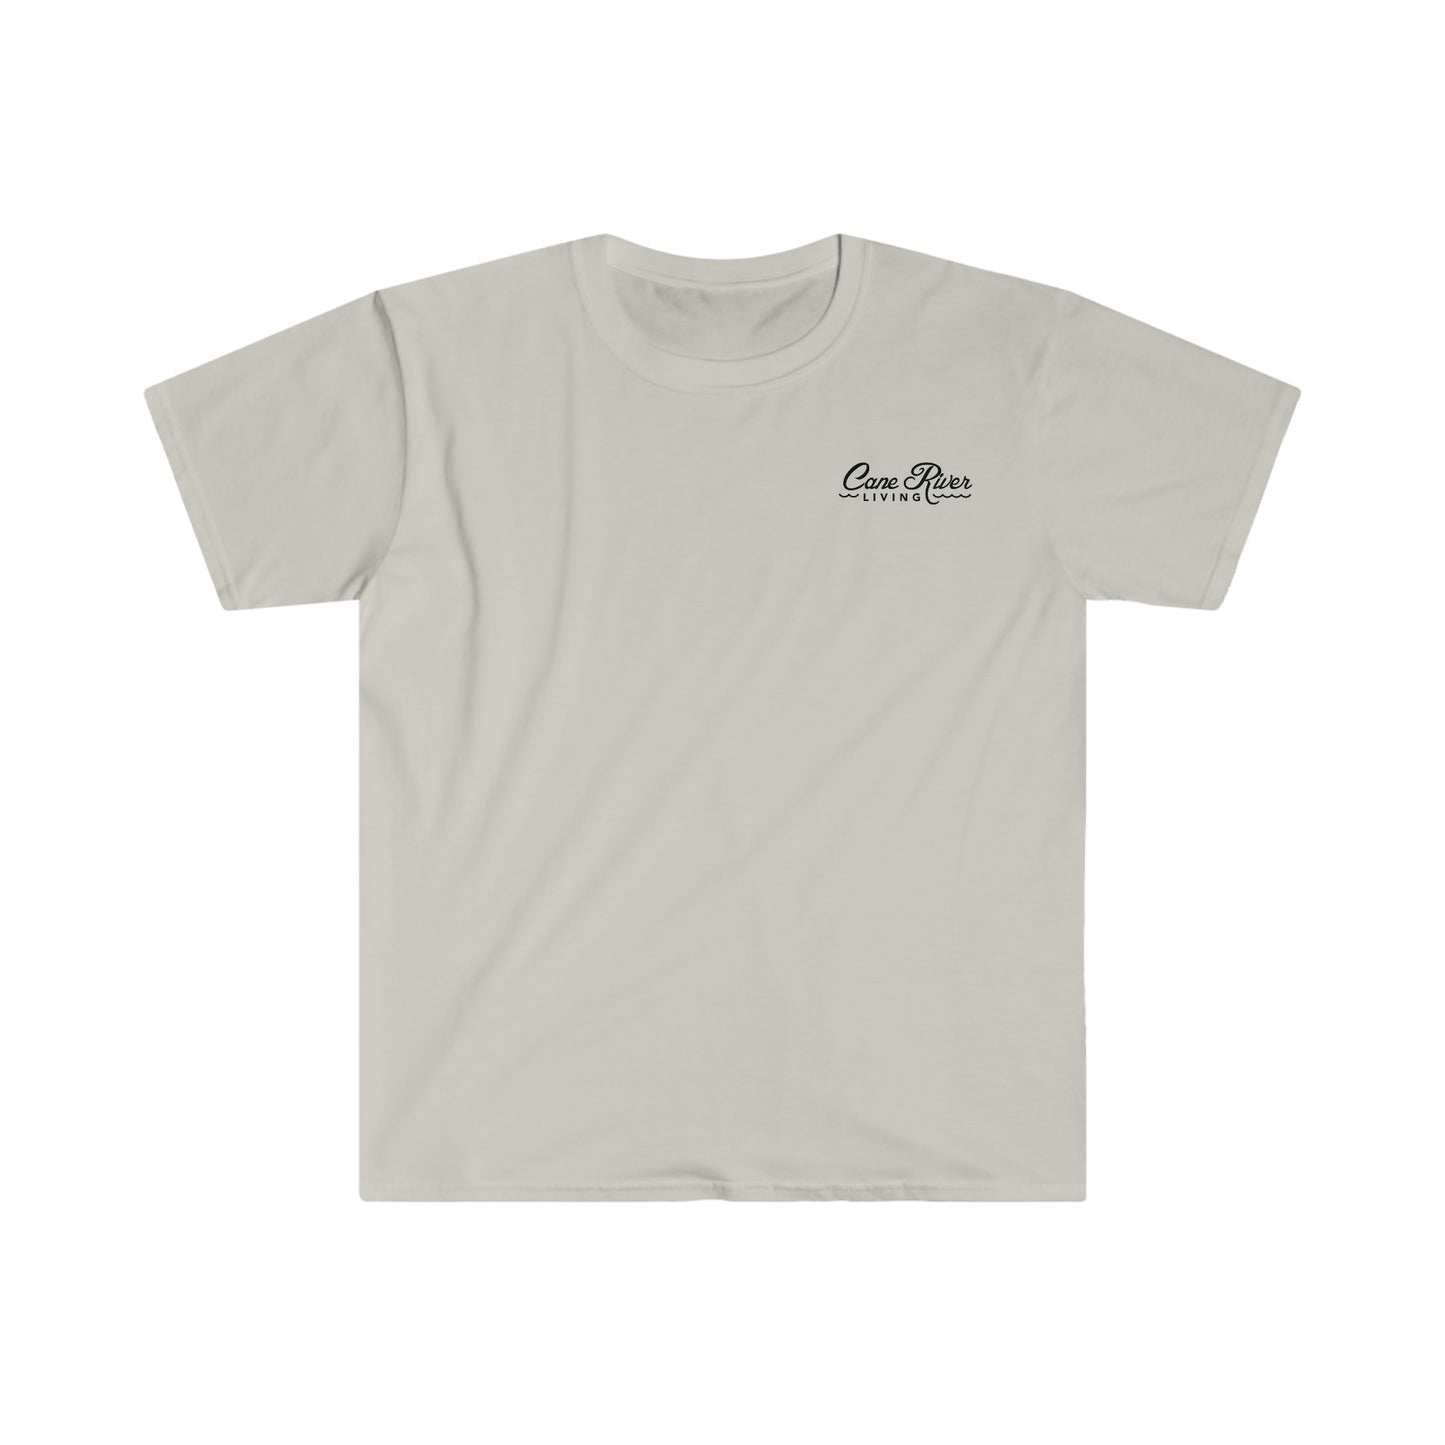 Vintage Catfish Drawing - Unisex Softstyle T-Shirt